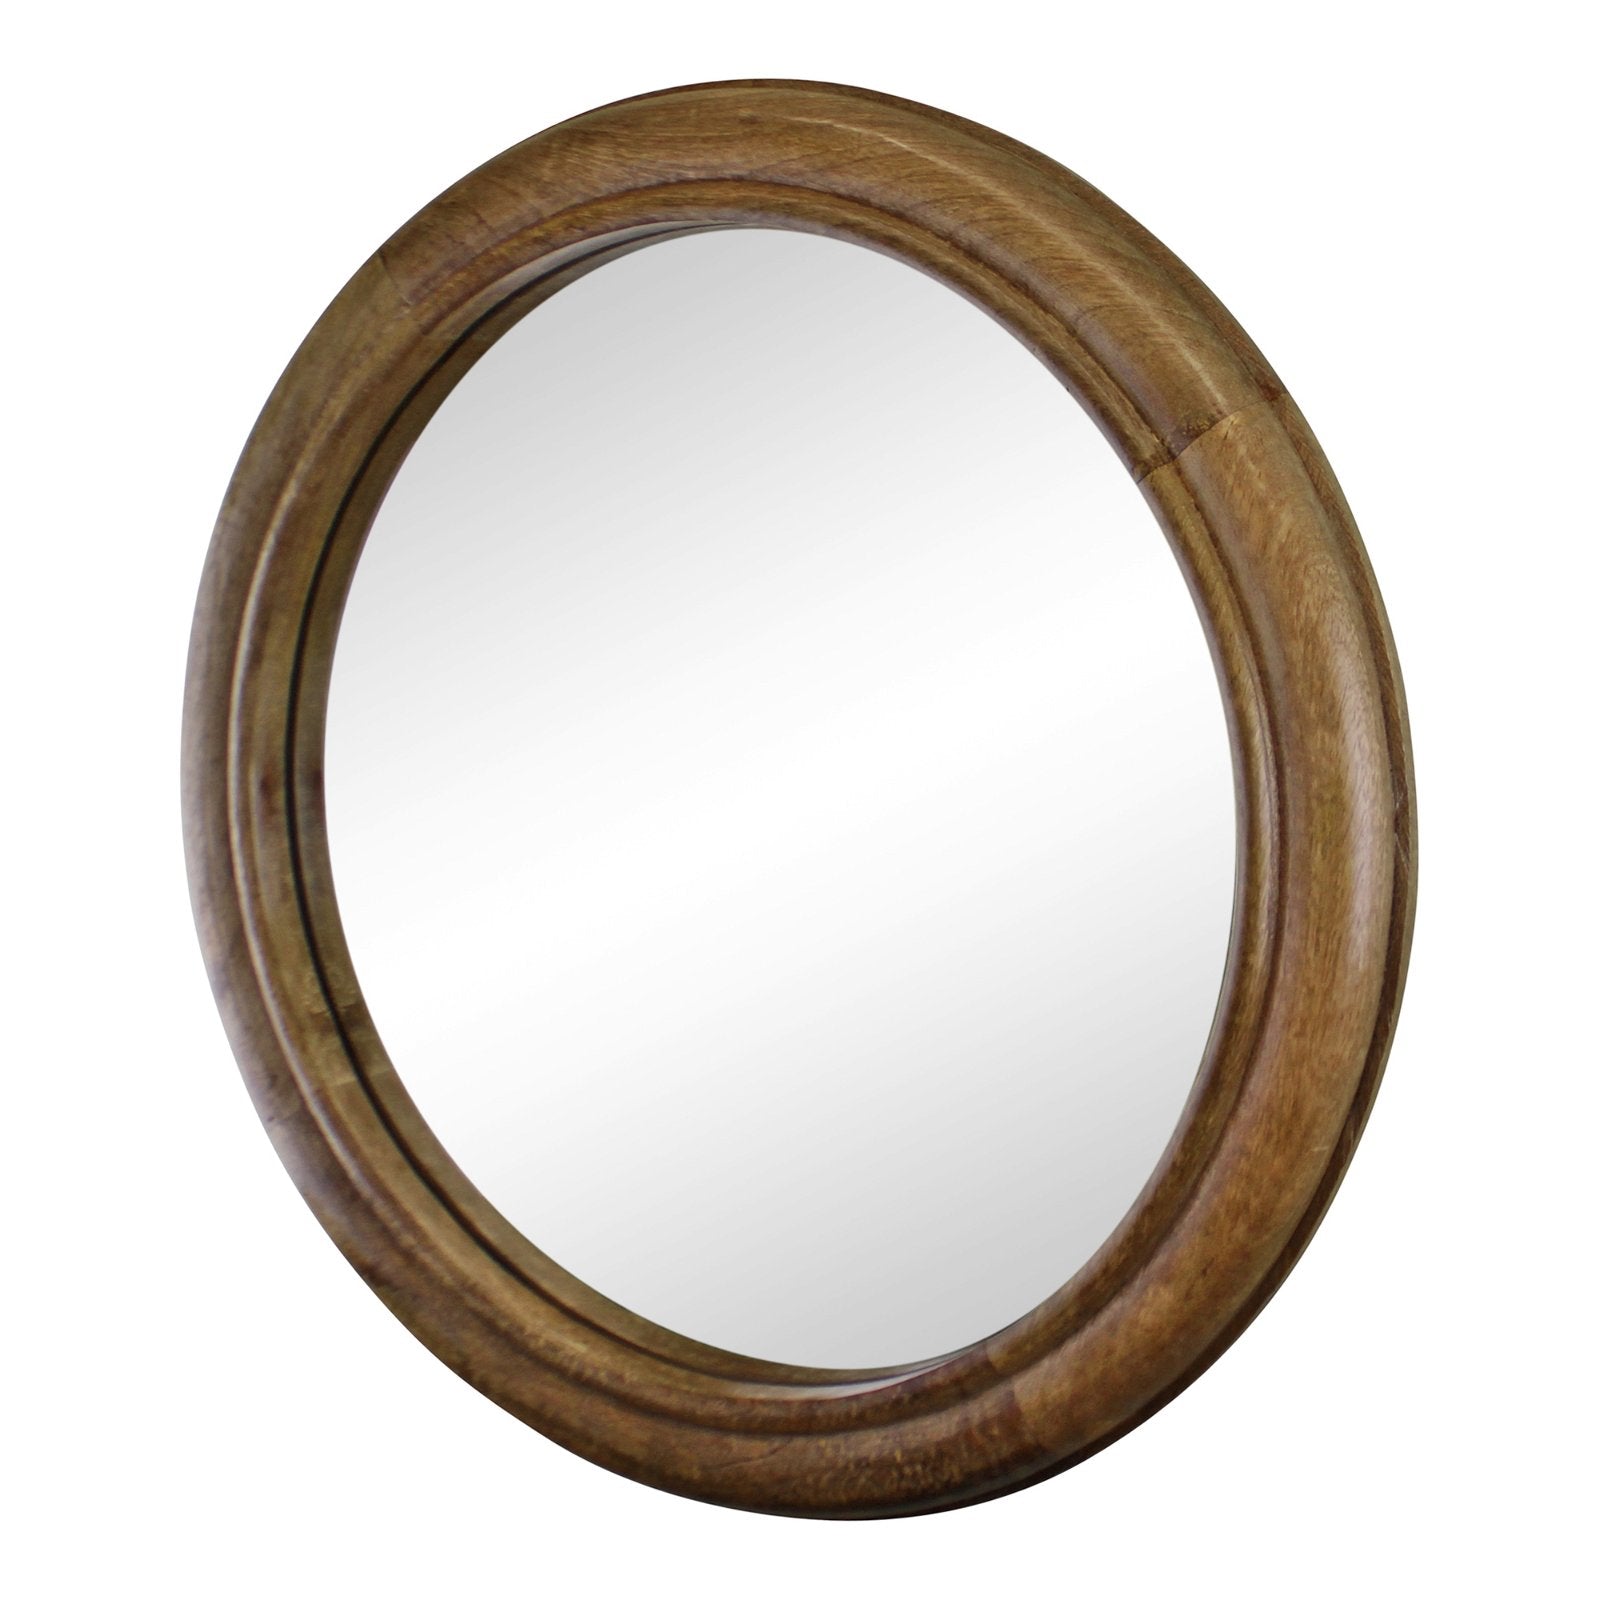 Mango Wood Circular Wall Mirror, 53cm